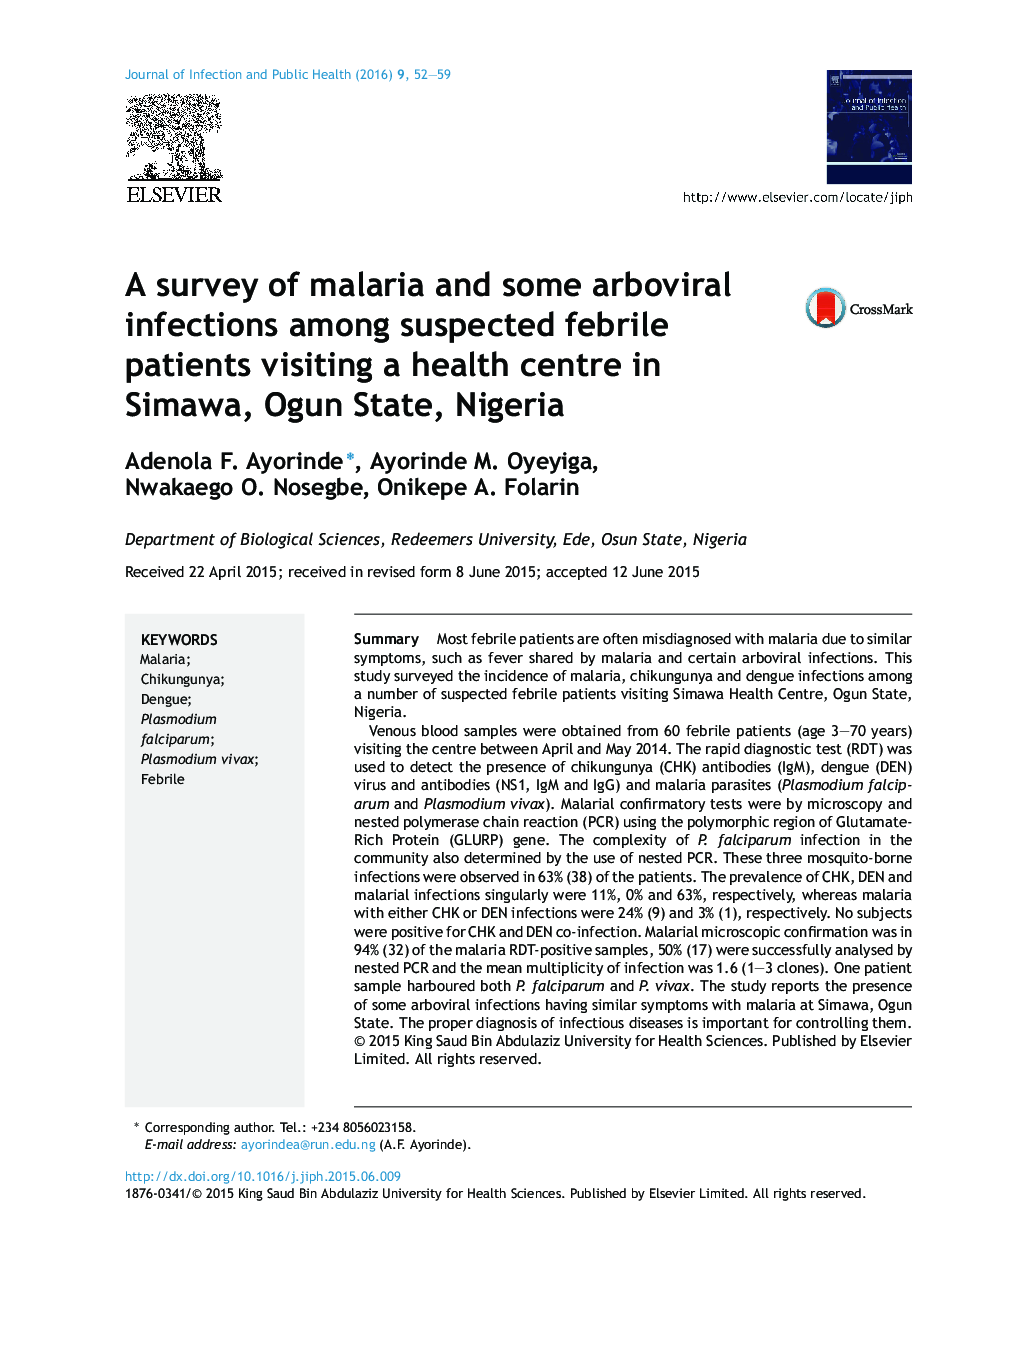 بررسی مالاریا و برخی از عفونت های آربیویورال در میان بیماران مبتلا به تب مراجعه کننده به یک مرکز بهداشتی در سیماوا، اوگان، نیجریه